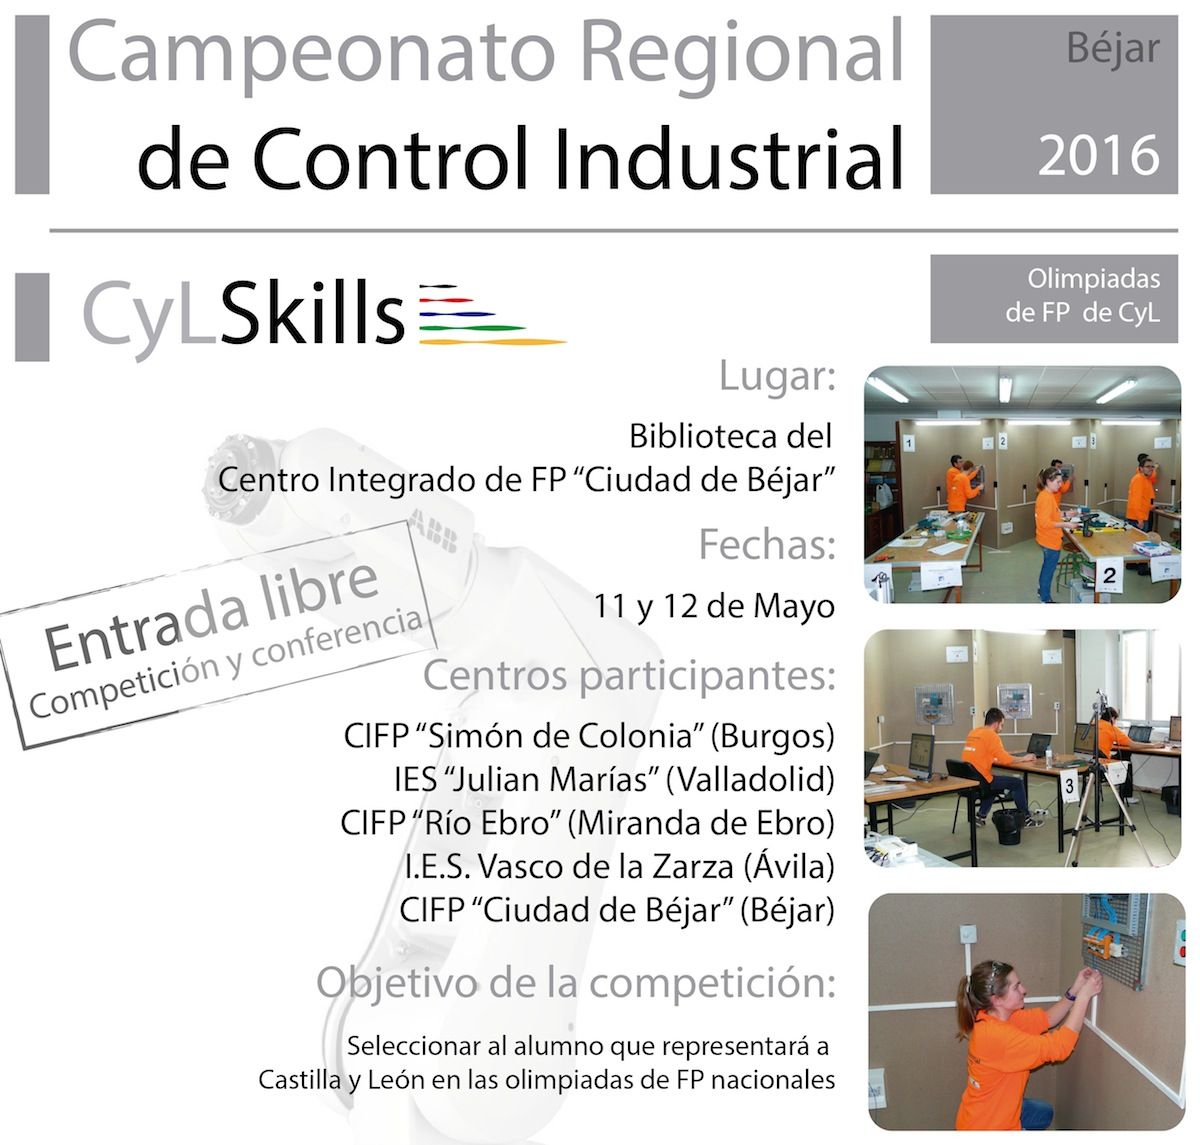 Campeonato regional de Control Industrial 2016